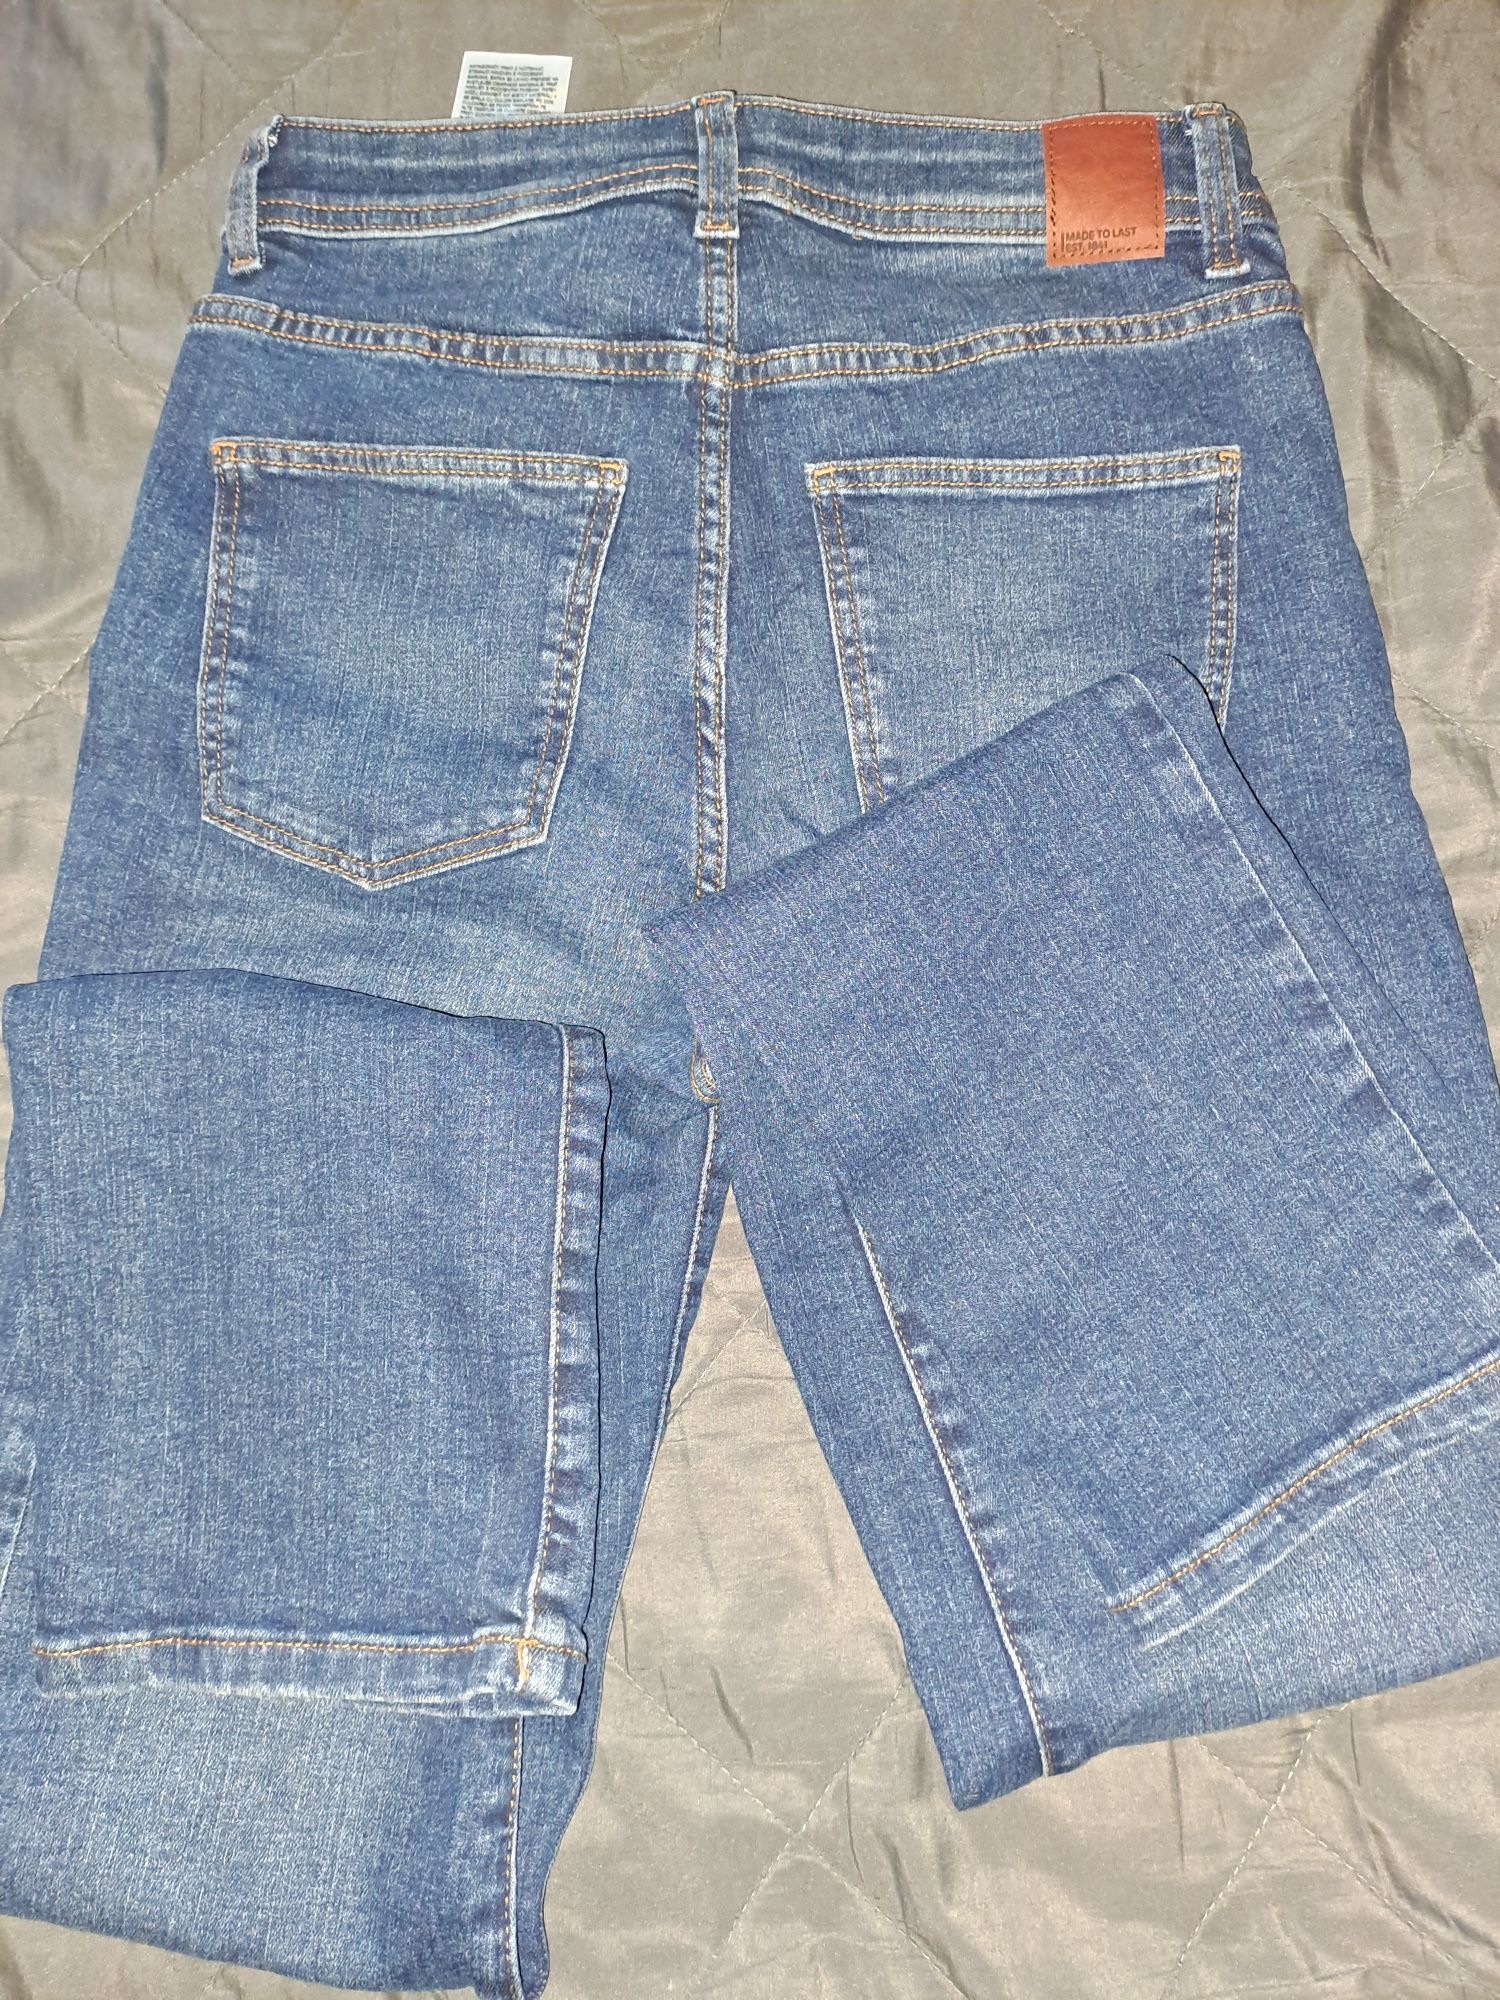 Blugi, jeans mar.38